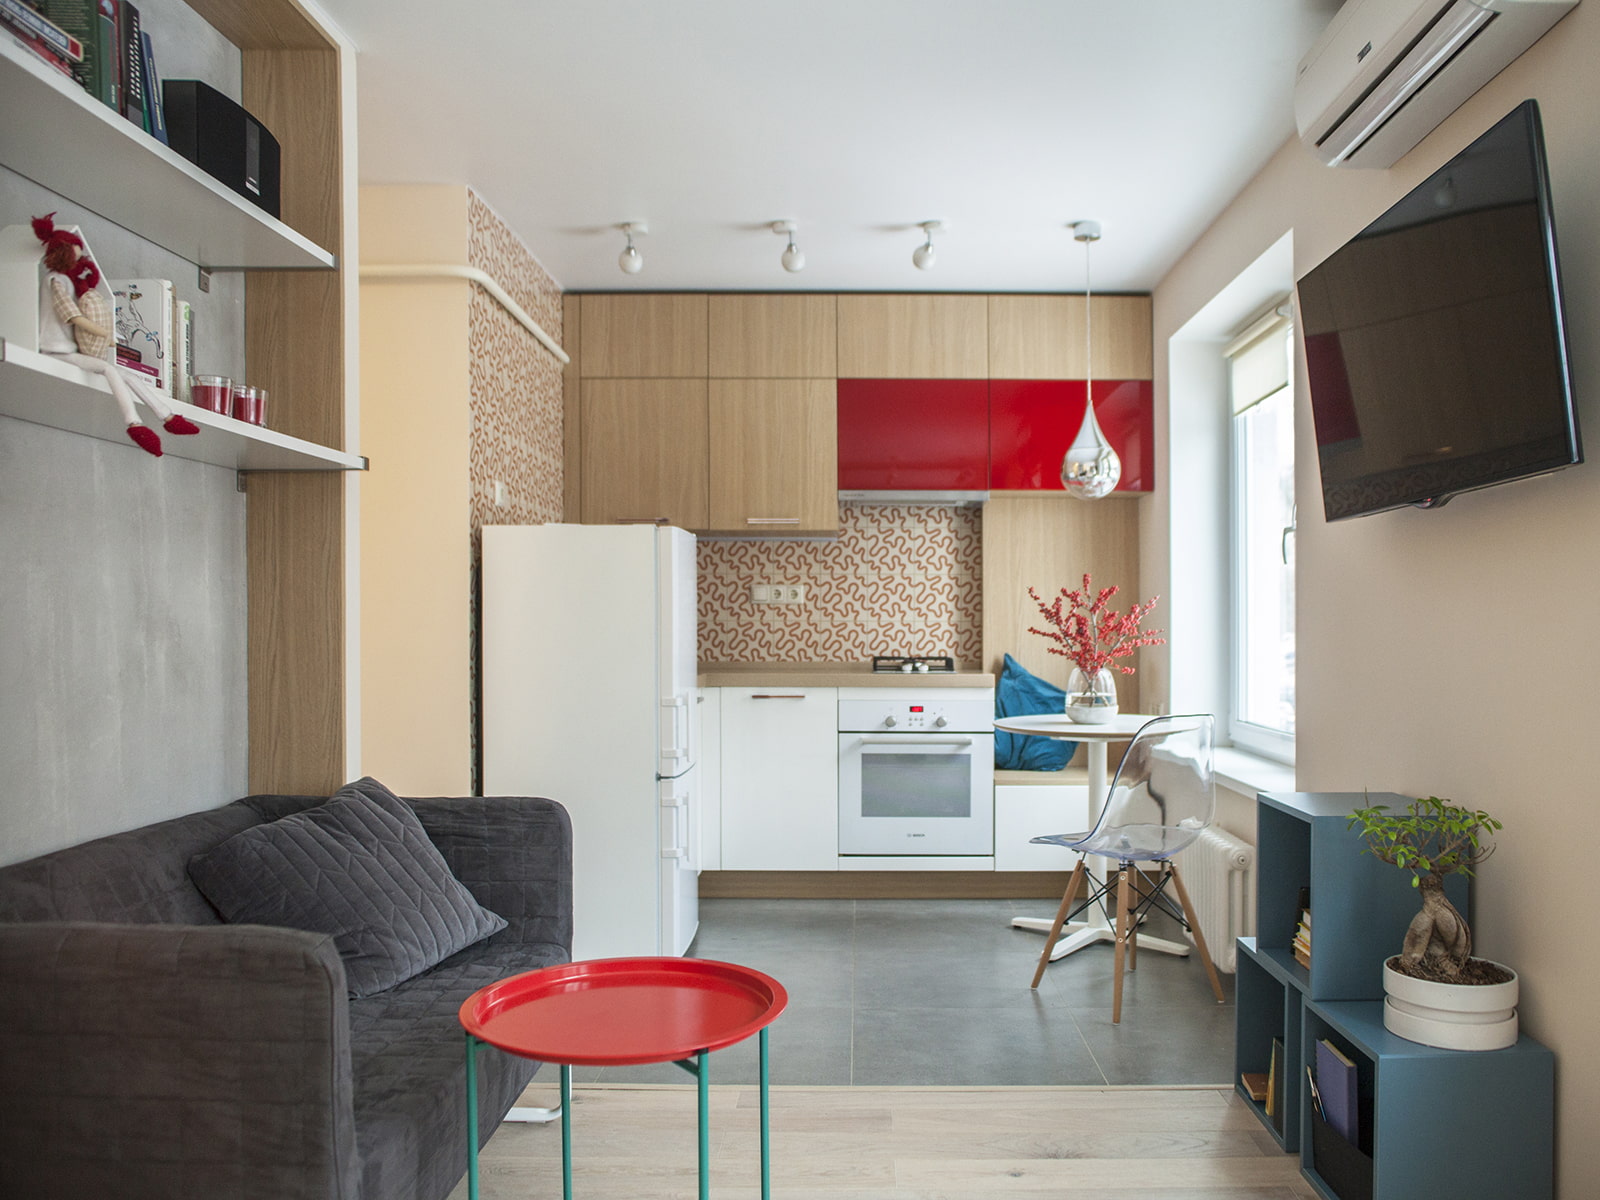 Кухня-гостиная 30 кв. м: фото дизайна, варианты интерьера и планировка проекта